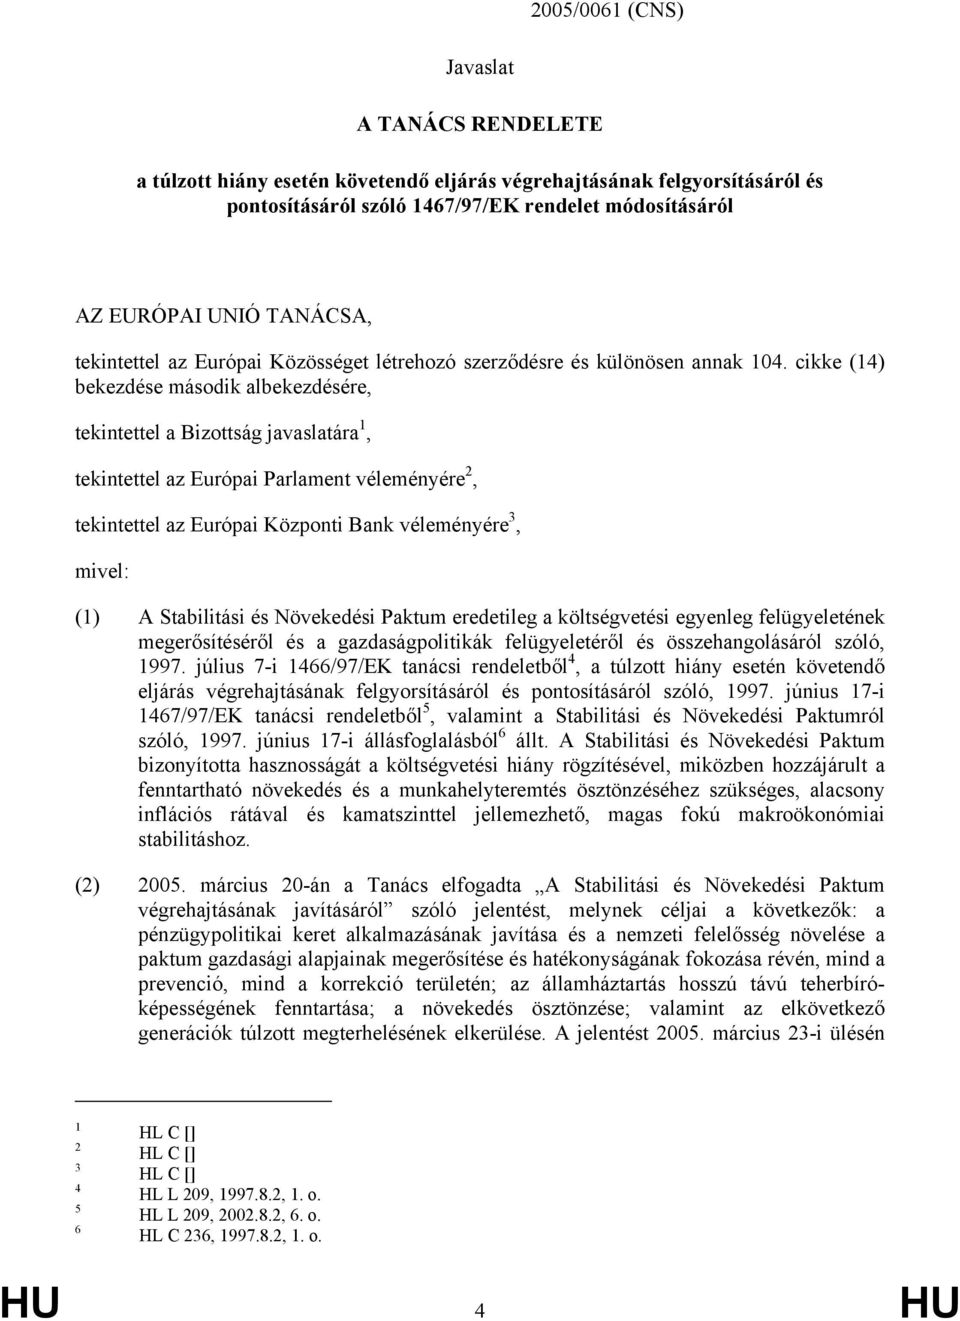 cikke (14) bekezdése második albekezdésére, tekintettel a Bizottság javaslatára 1, tekintettel az Európai Parlament véleményére 2, tekintettel az Európai Központi Bank véleményére 3, mivel: (1) A